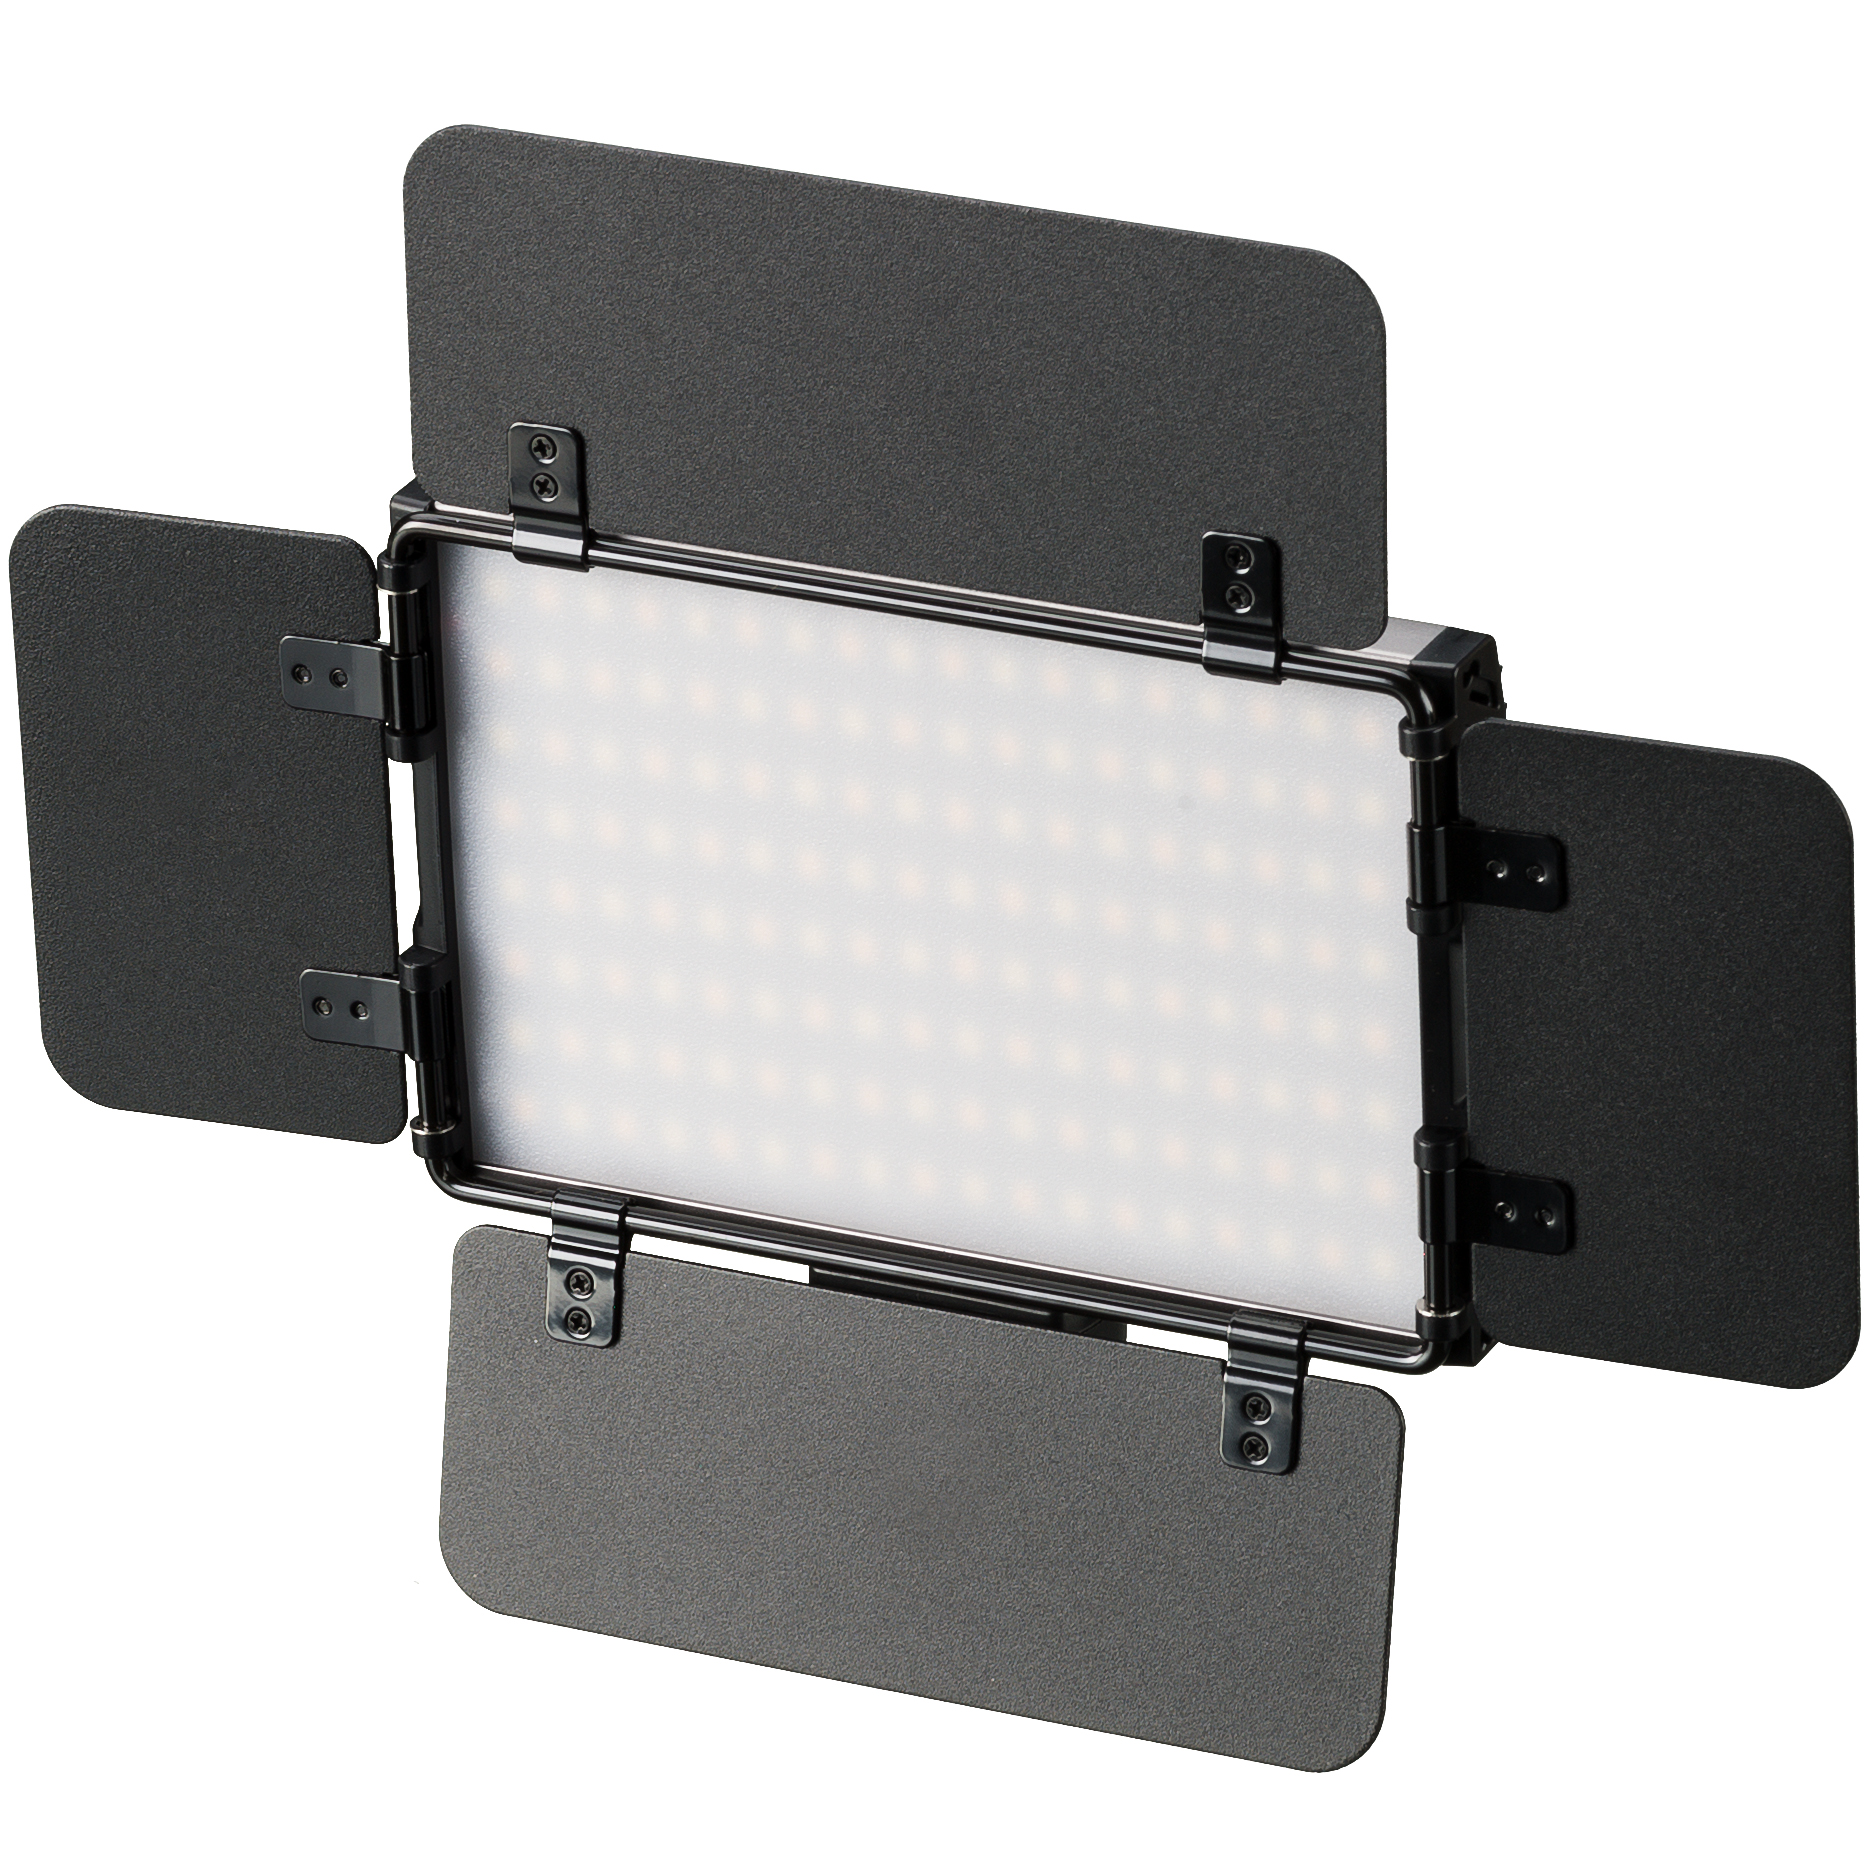 BRESSER PT Pro 15B-II Bi-Color LED Videoleuchte mit Lichtklappen, Akku und Tasche